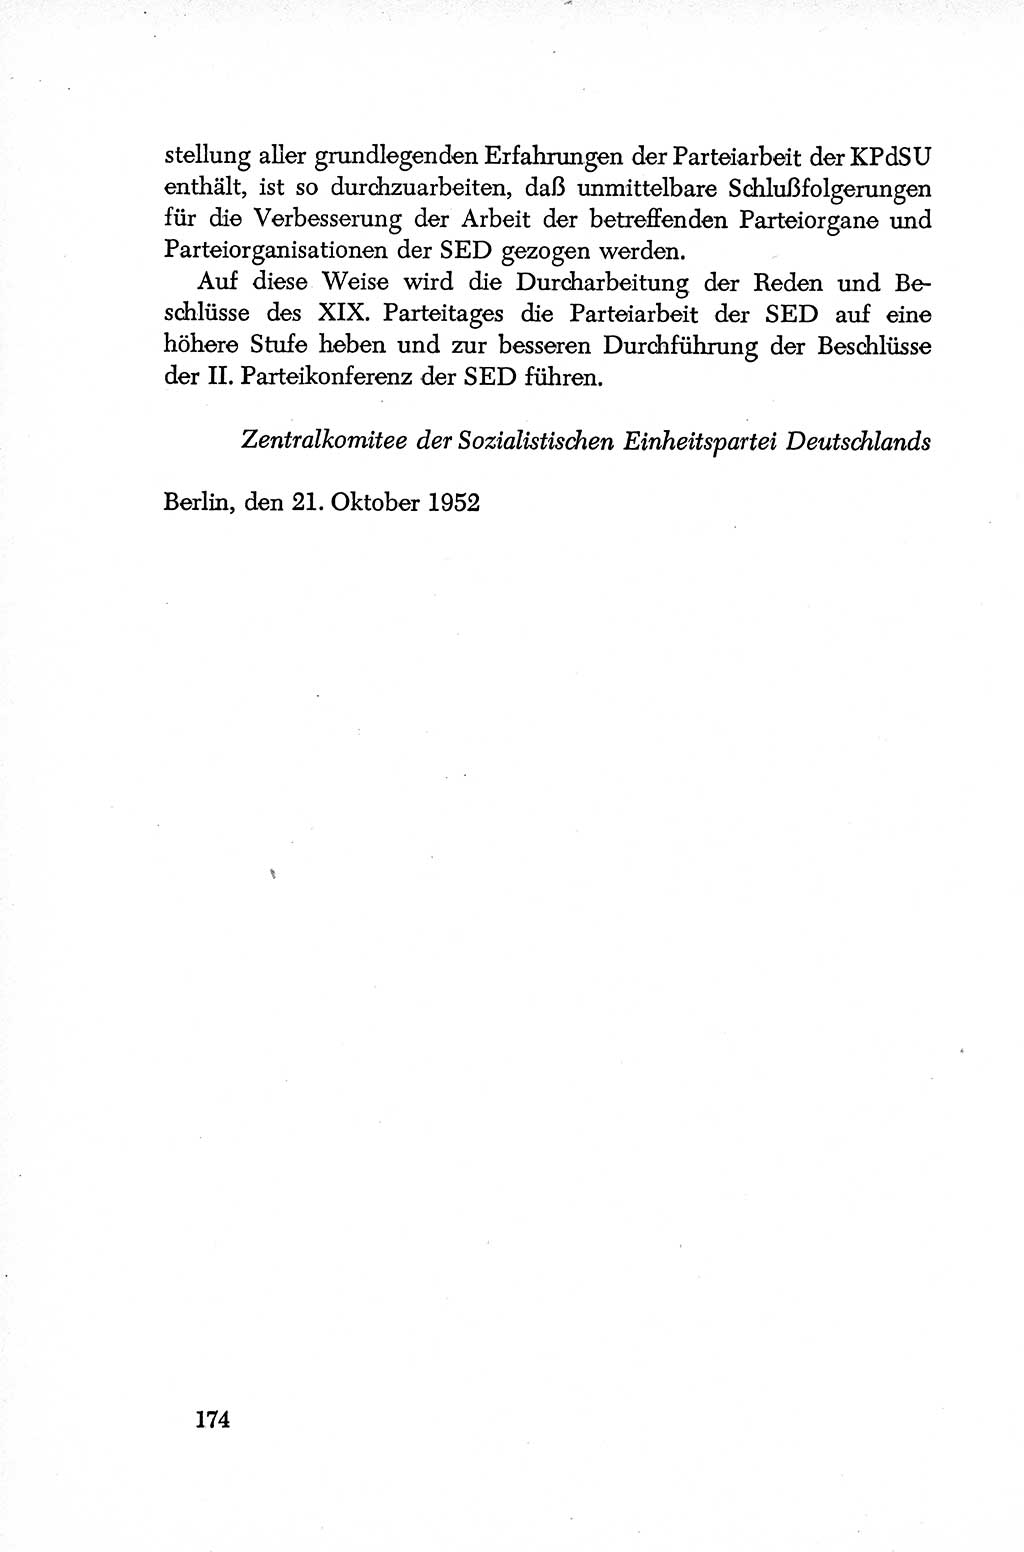 Dokumente der Sozialistischen Einheitspartei Deutschlands (SED) [Deutsche Demokratische Republik (DDR)] 1952-1953, Seite 174 (Dok. SED DDR 1952-1953, S. 174)